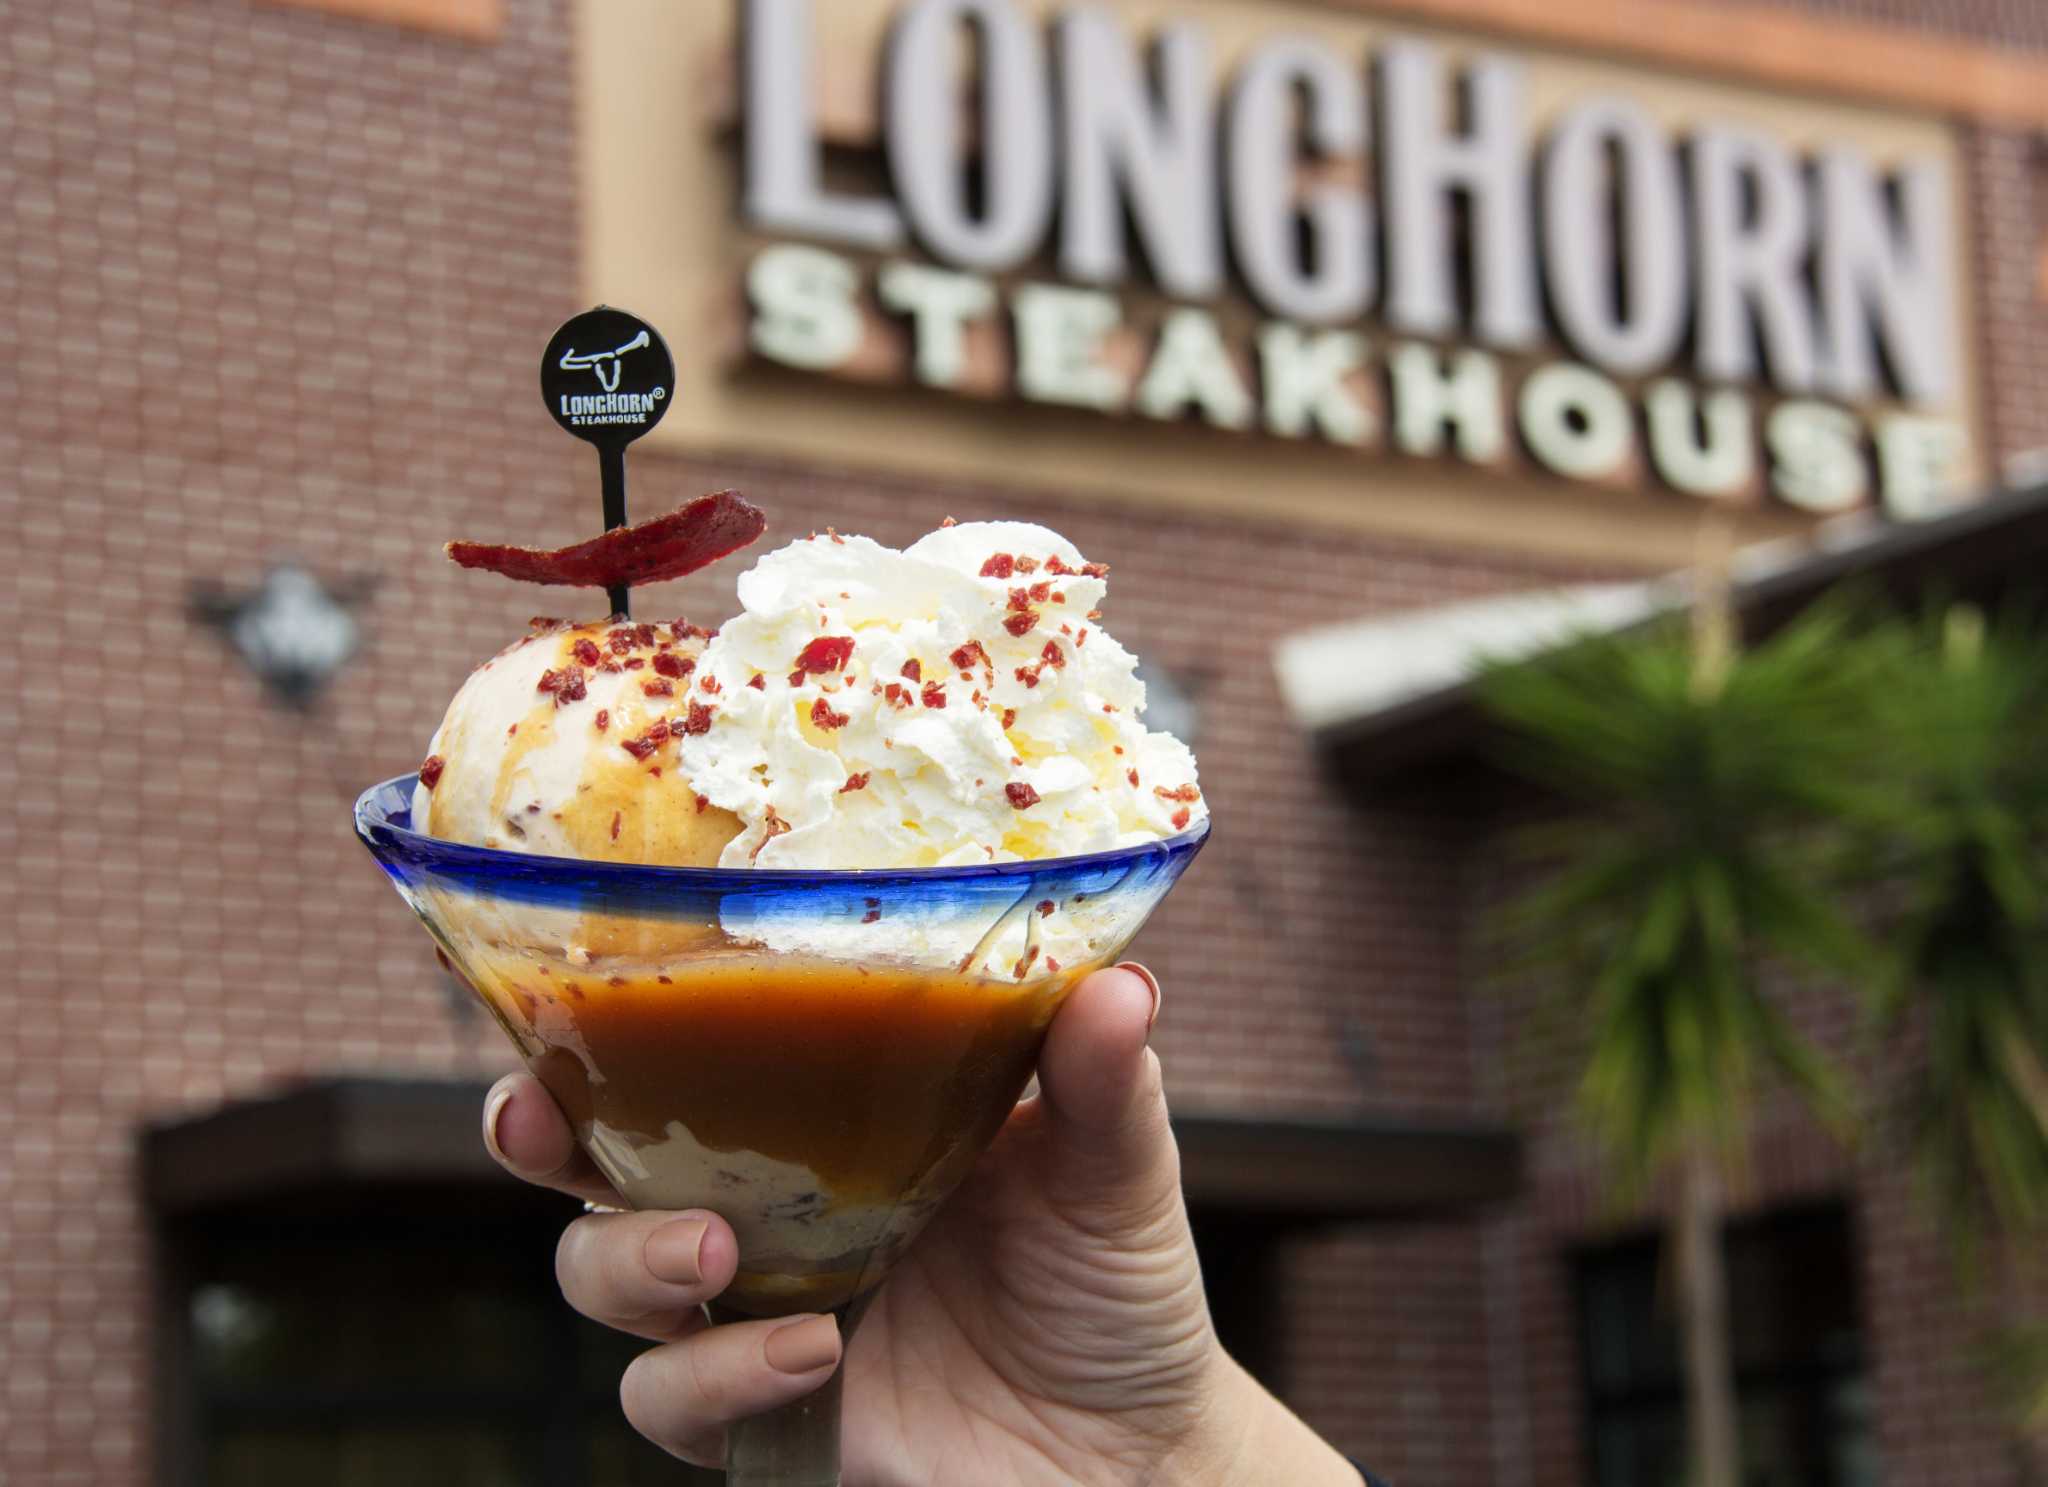 LongHorn Steakhouses offer steak for dessert - HoustonChronicle.com